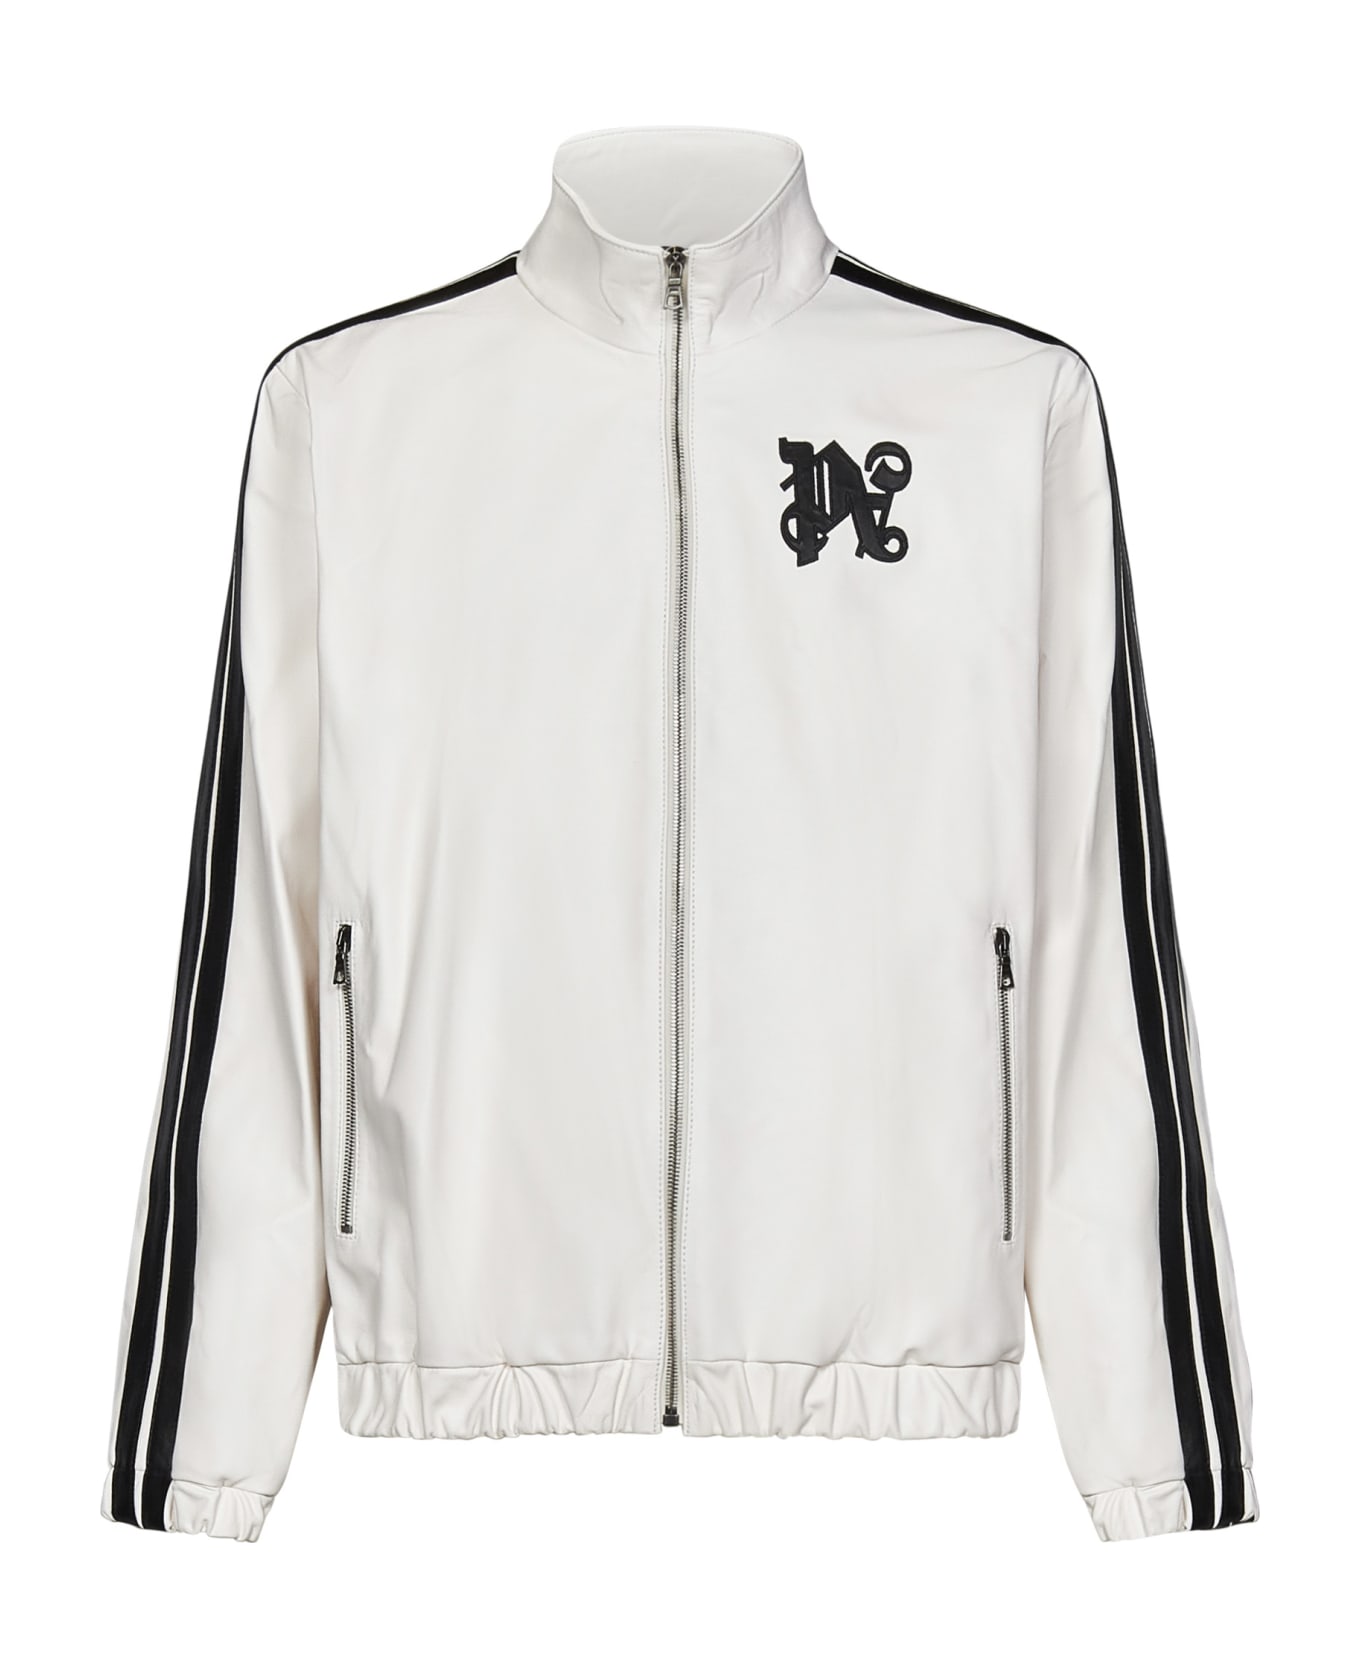 Palm Angels Monogram Leather Track Jacket - White